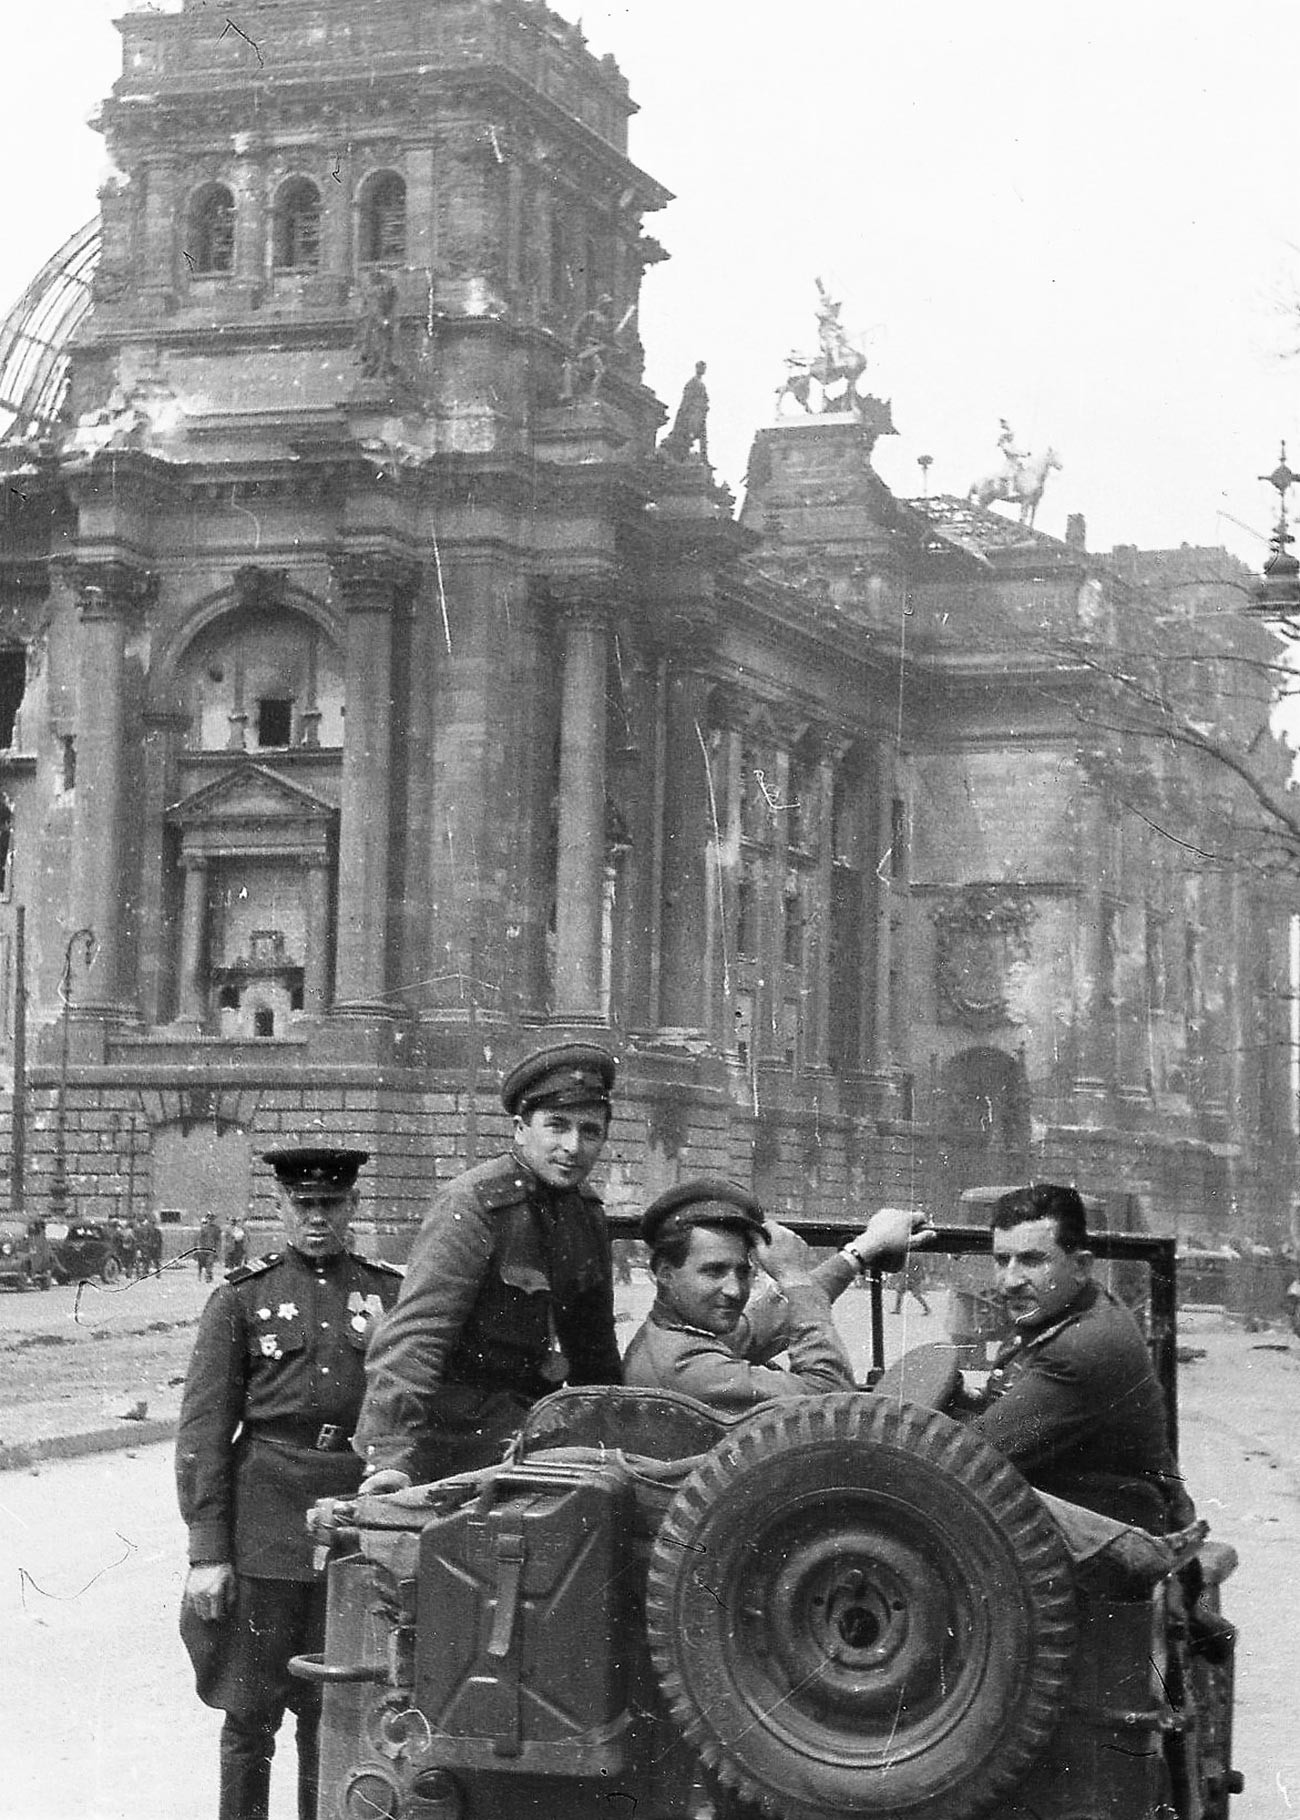 イリヤ・アロンス。左から順に、マトヴェイ・ヴァイントルプ少将、作家のコンスタンチン・シモノフ、映像作家のイリヤ・アロンス。ベルリンの国会議事堂にて。1945年。